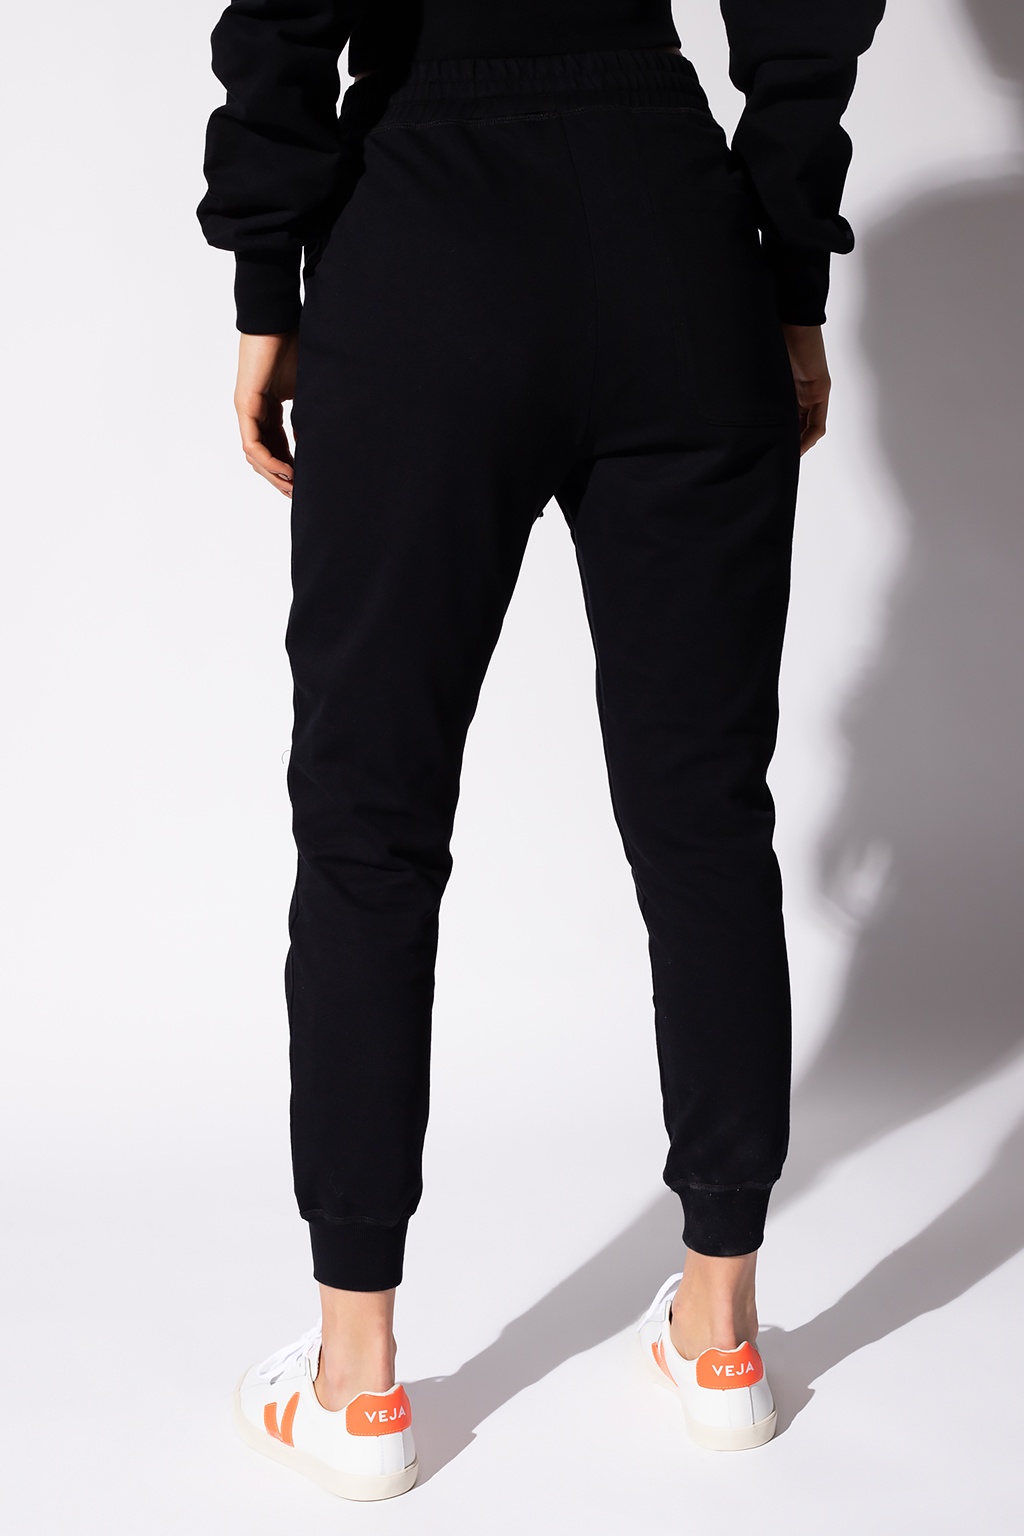 Vivienne Westwood lee cooper cooper mens workwear holster pocket cargo trouser black